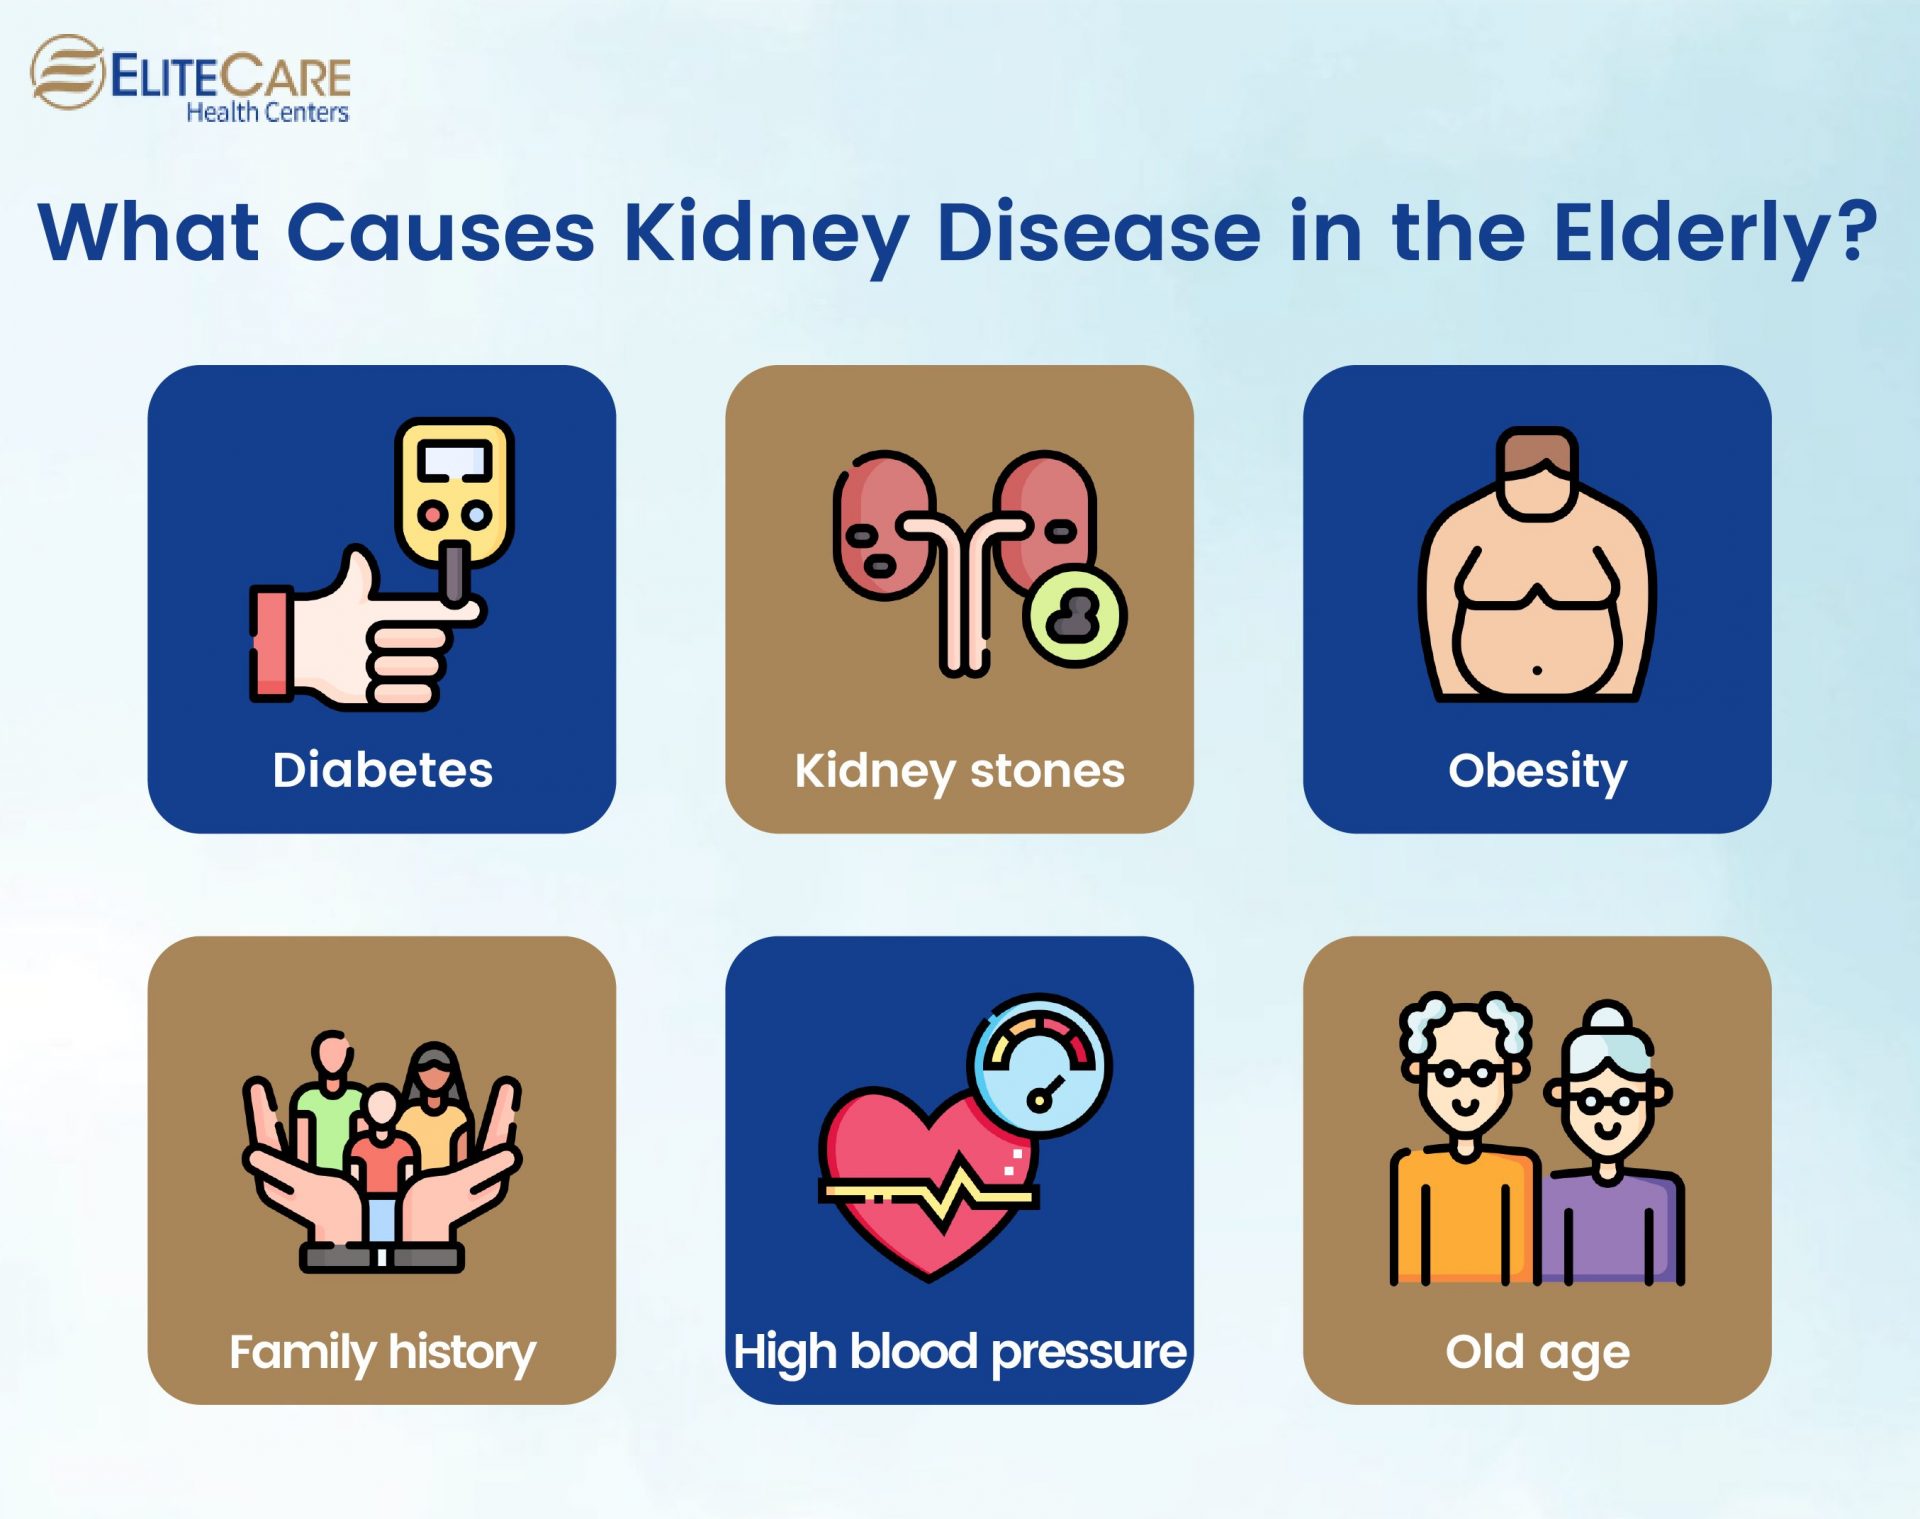 What Causes Kidney Disease in the Elderly?